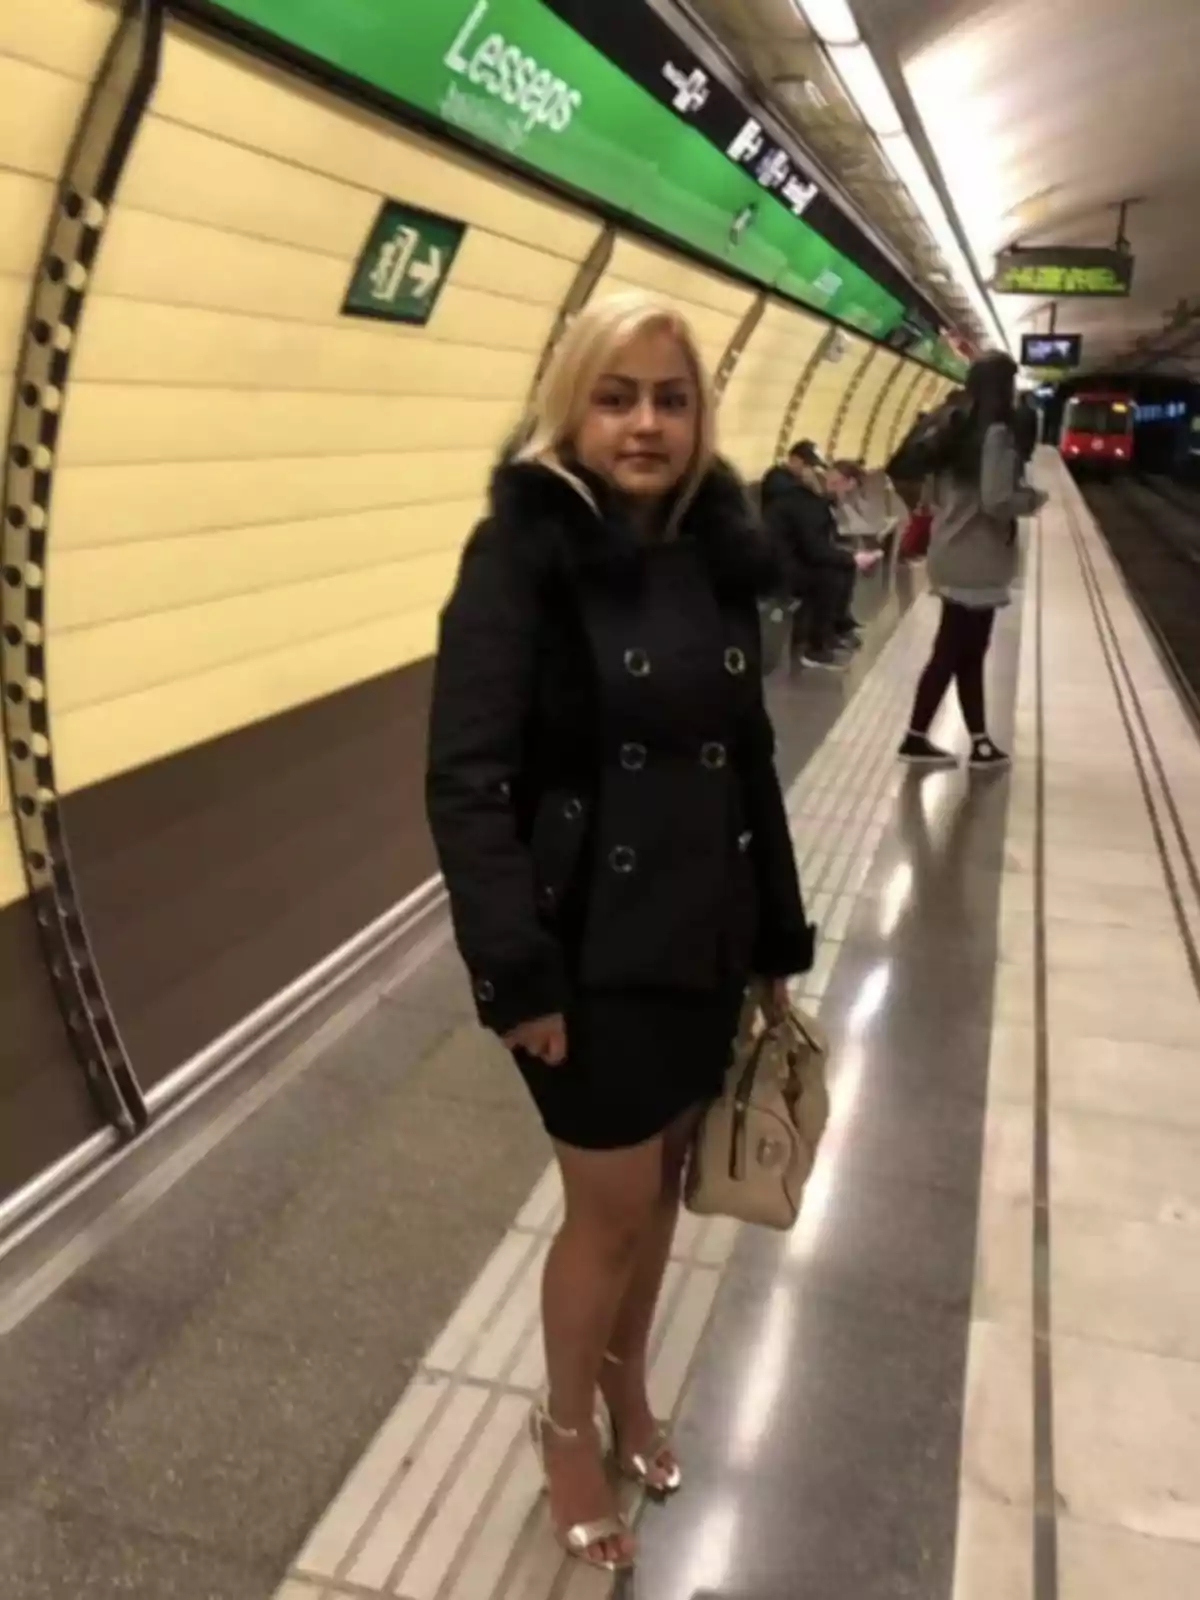 Una mujer con cabello rubio y abrigo negro está de pie en una estación de metro llamada Lesseps, sosteniendo un bolso beige.